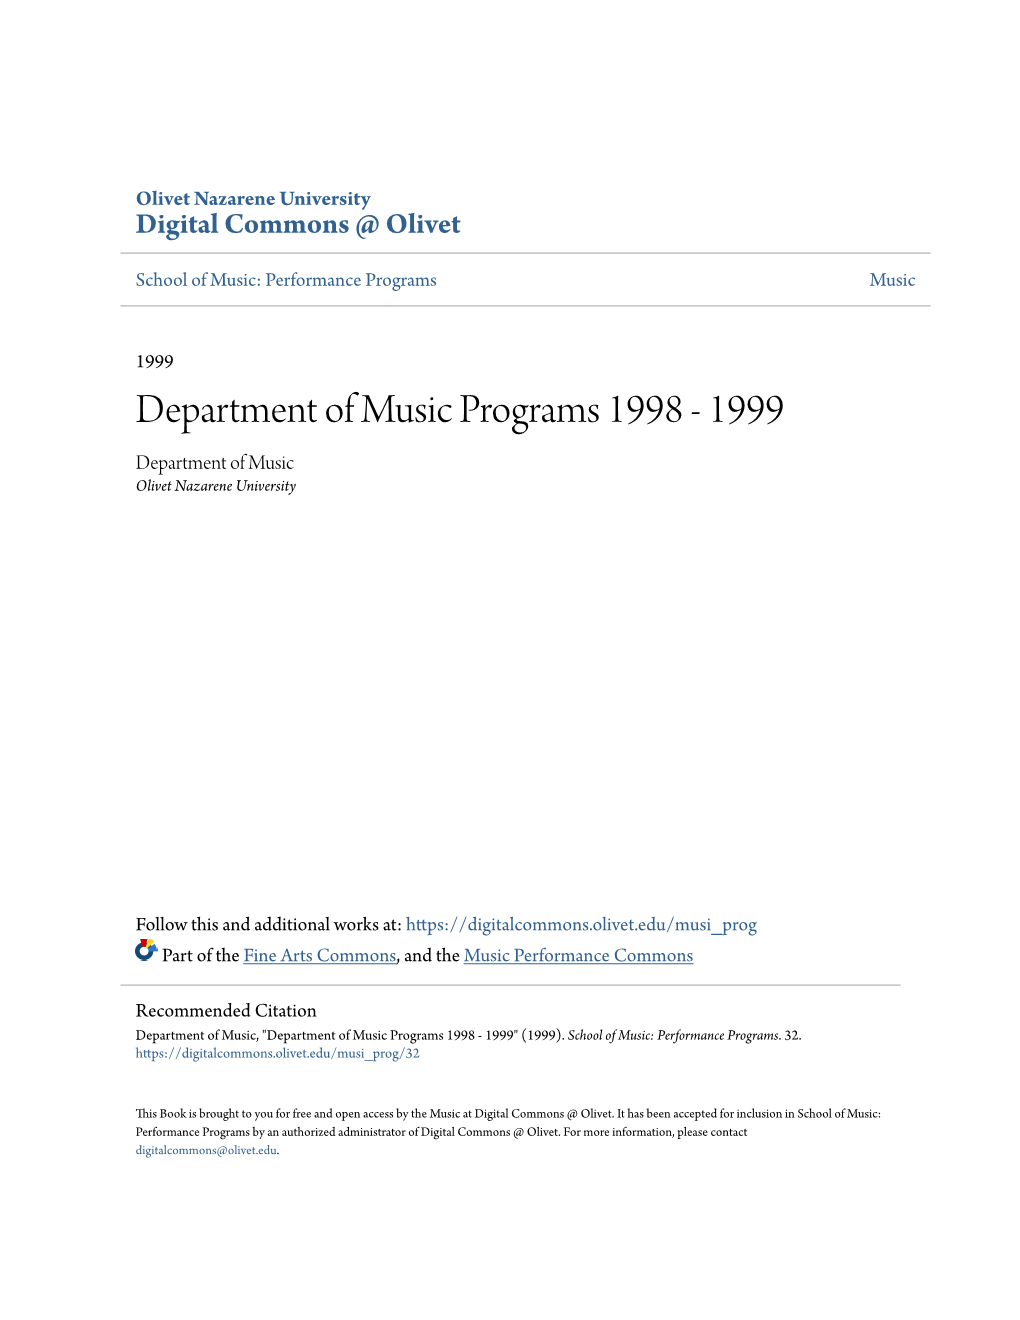 Department of Music Programs 1998 - 1999 Department of Music Olivet Nazarene University